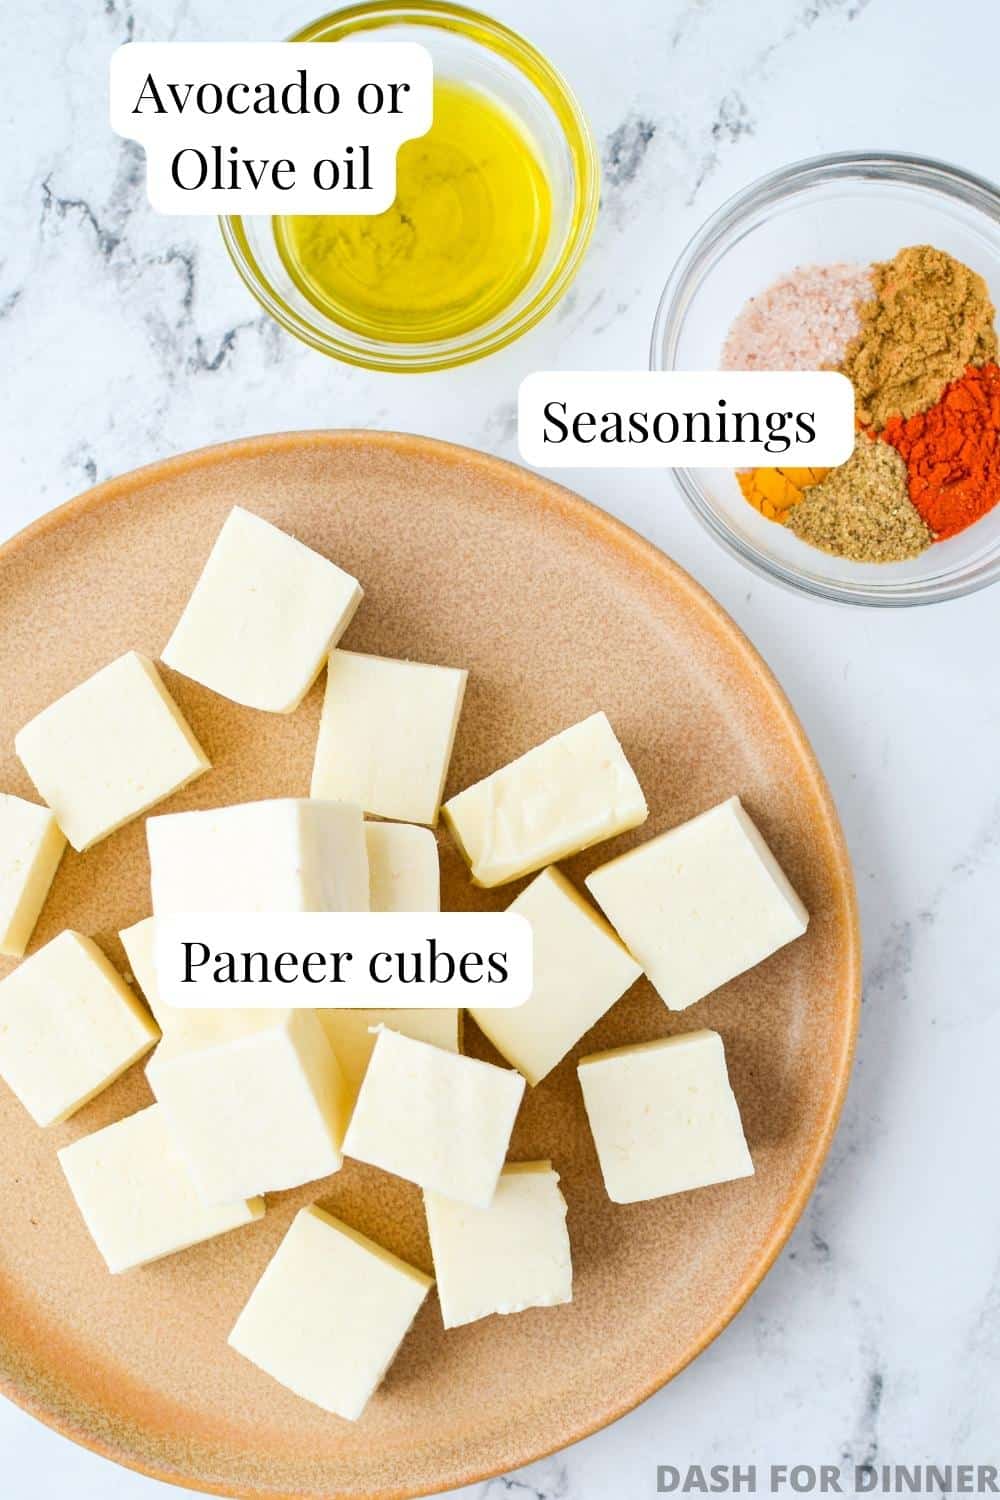 The ingredients needed to make air fryer paneer: paneer, seasonings, and oil.